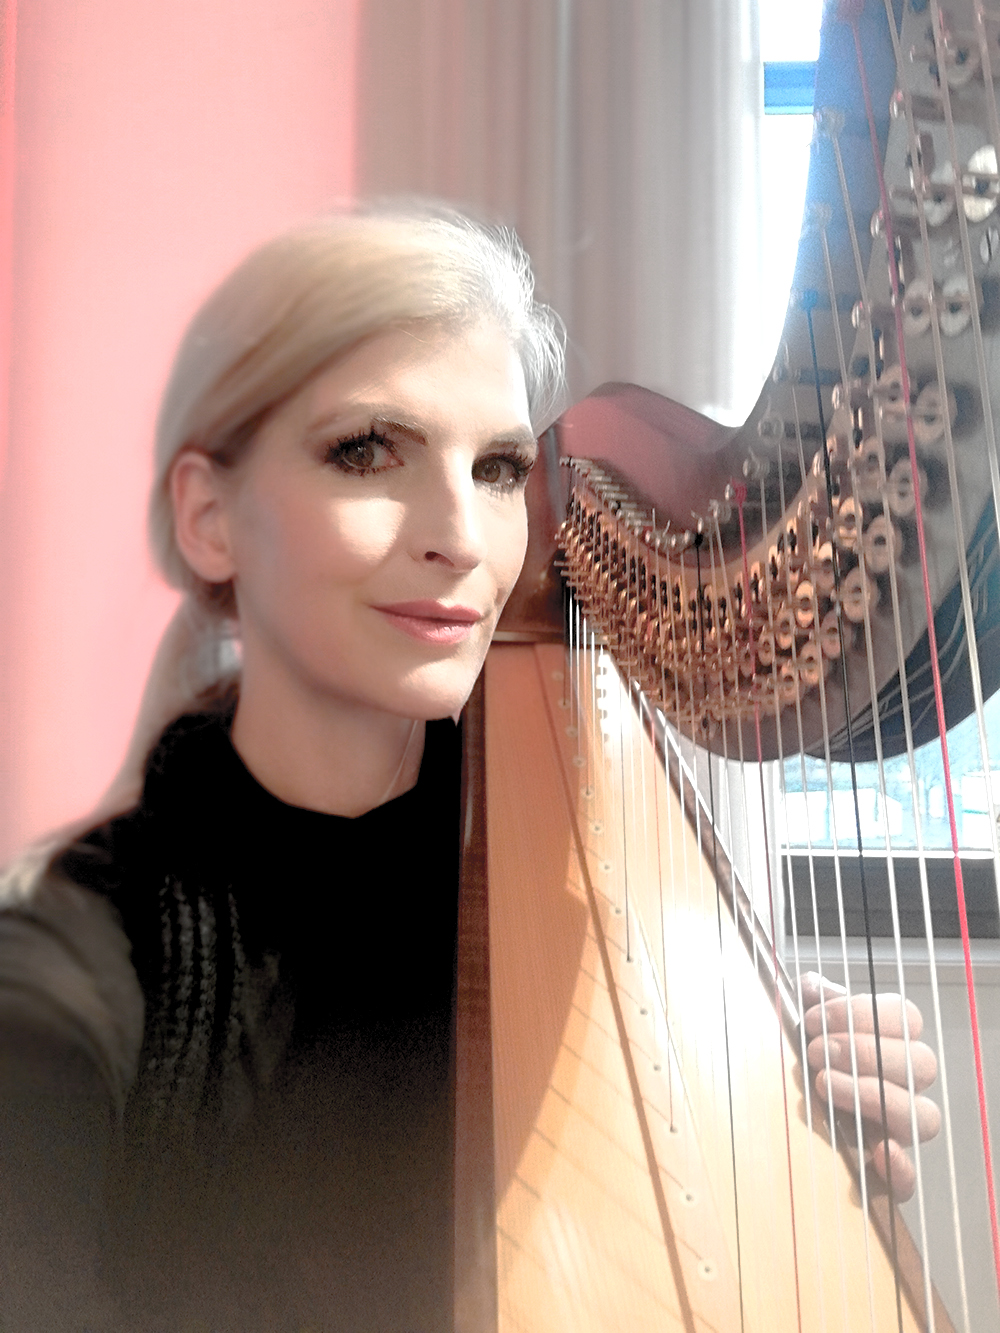 harp music from Berlin by Simonetta